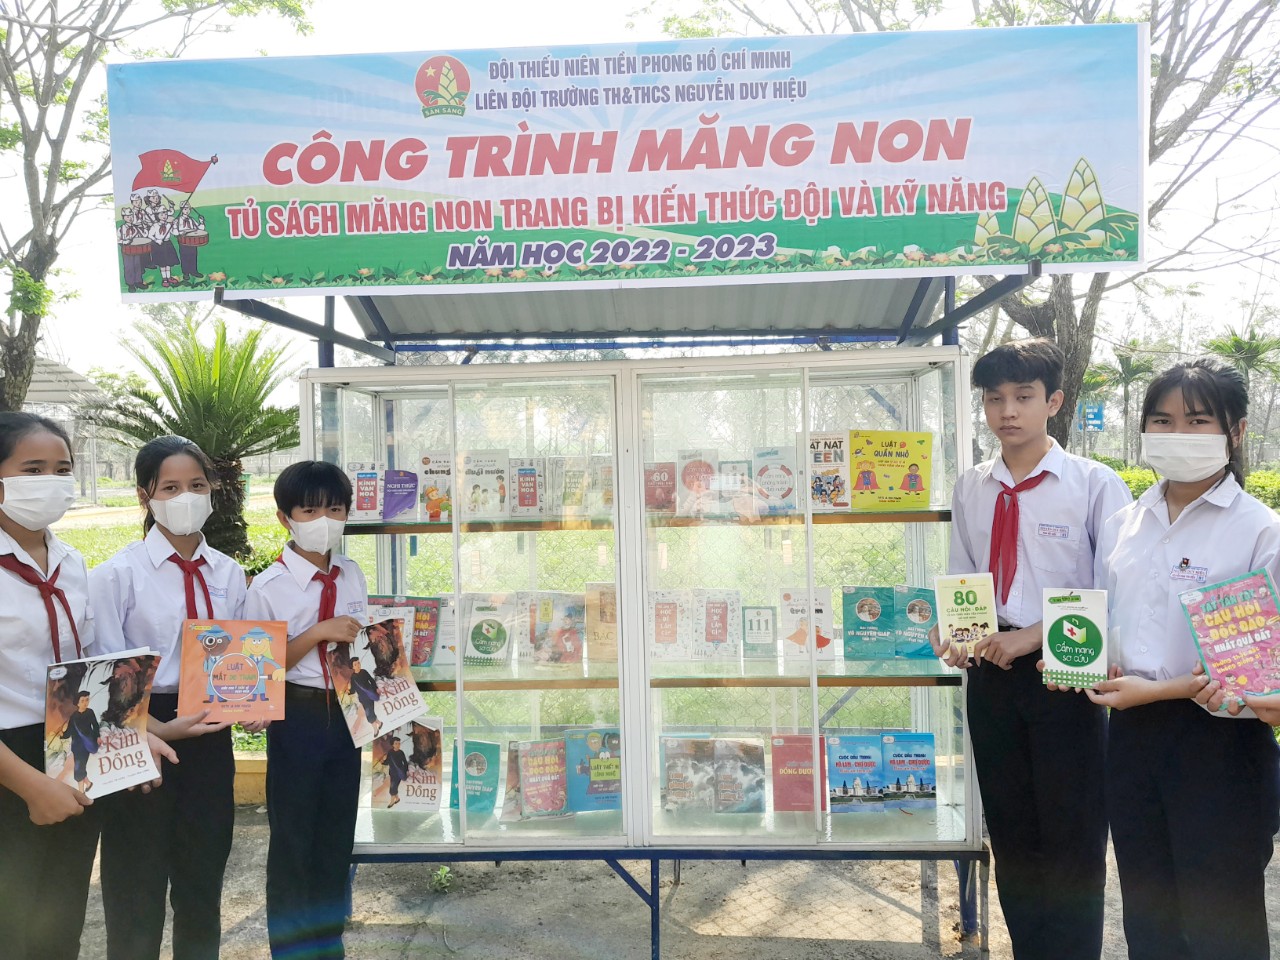 Liên đội Trường TH&THCS Nguyễn Duy Hiệu hoàn thành công trình măng non" Tủ sách măng non trang bị kiến thức Đội và kỹ năng cho Đội viên, nhi đồng" năm học 2022-2023